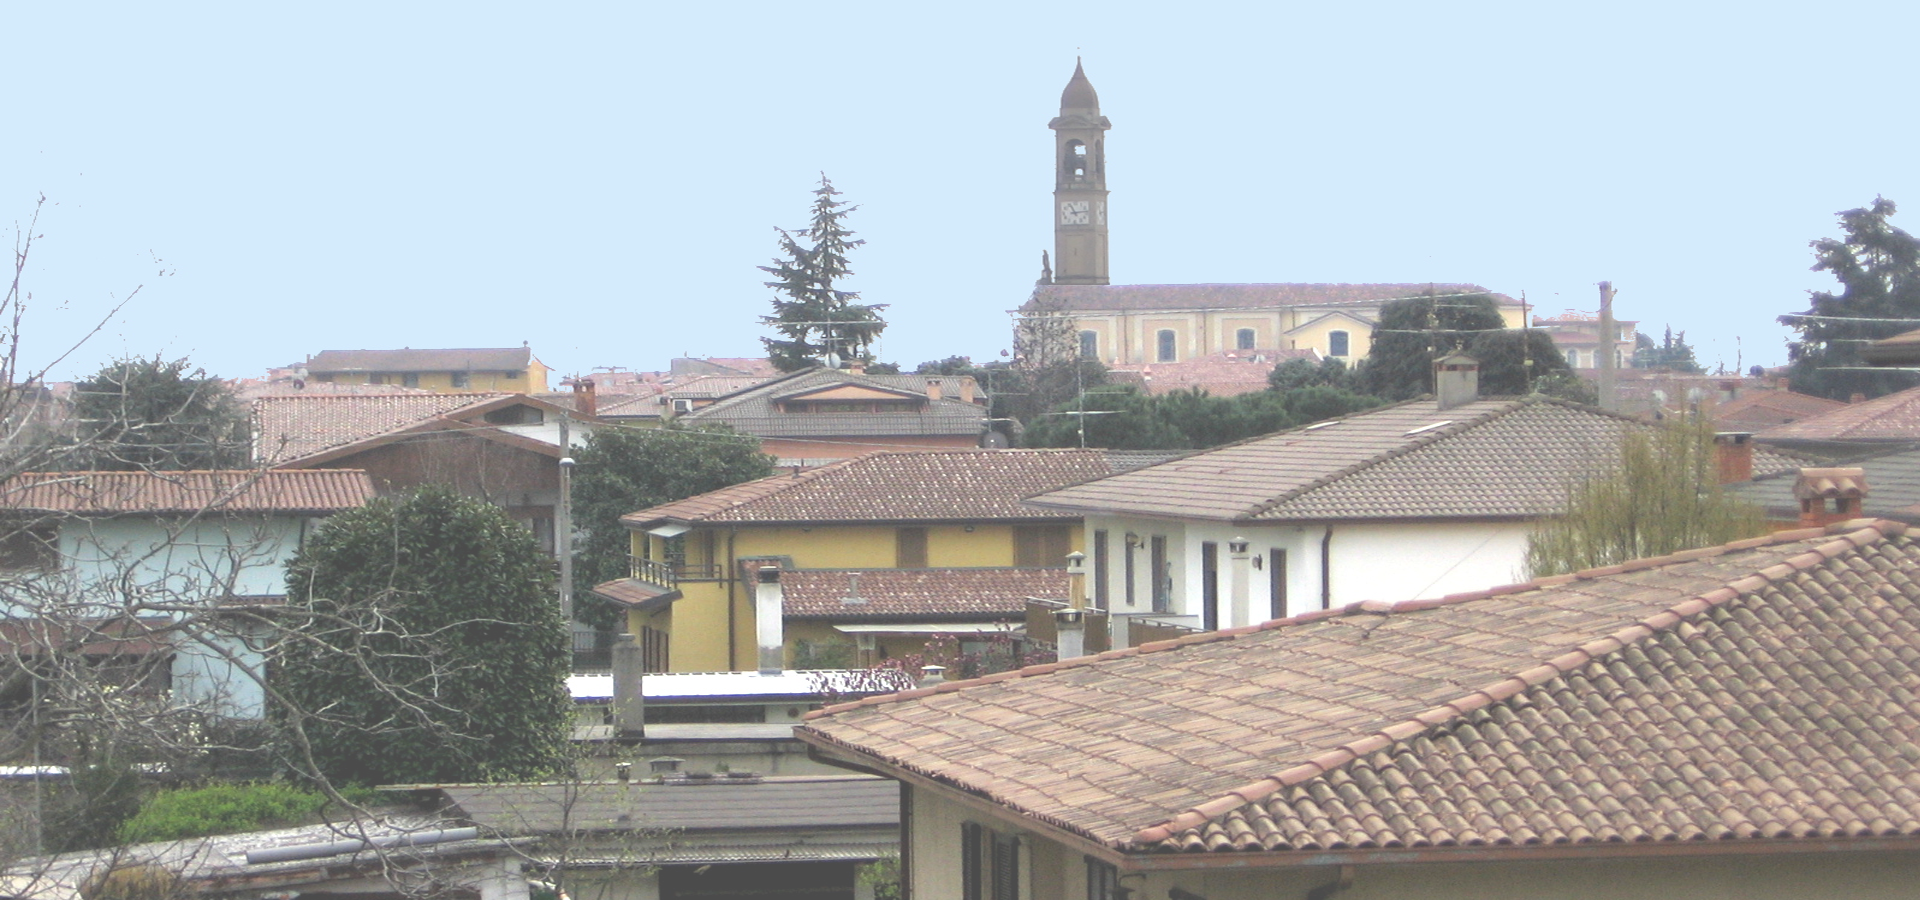 <b>Palosco, Province of Bergamo, Lombardy, Italy</b>